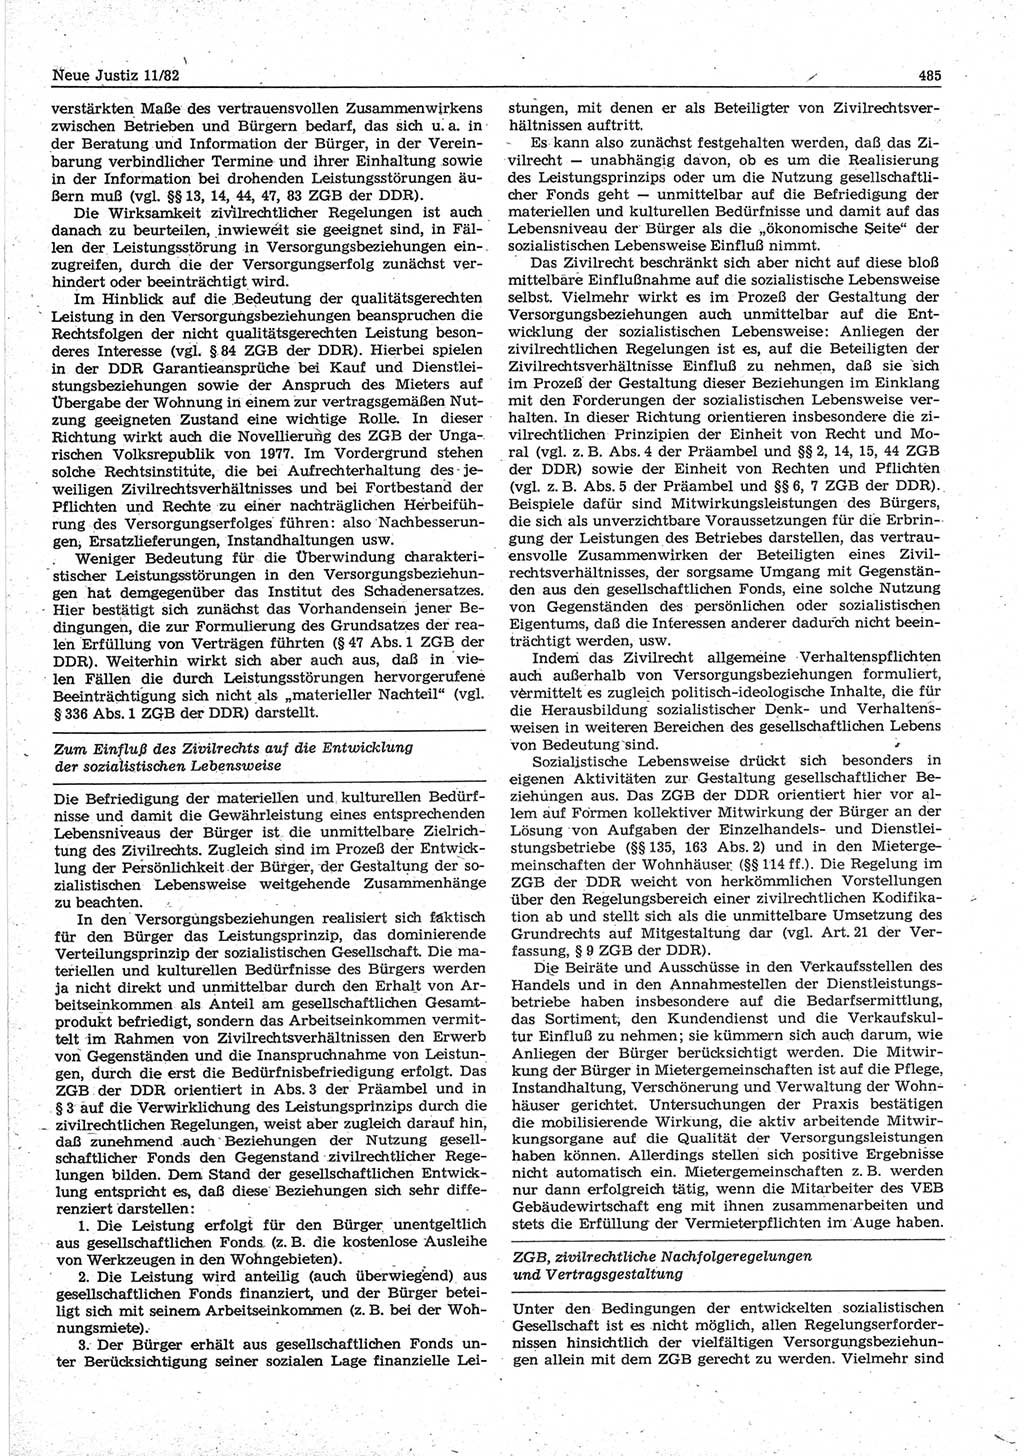 Neue Justiz (NJ), Zeitschrift für sozialistisches Recht und Gesetzlichkeit [Deutsche Demokratische Republik (DDR)], 36. Jahrgang 1982, Seite 485 (NJ DDR 1982, S. 485)